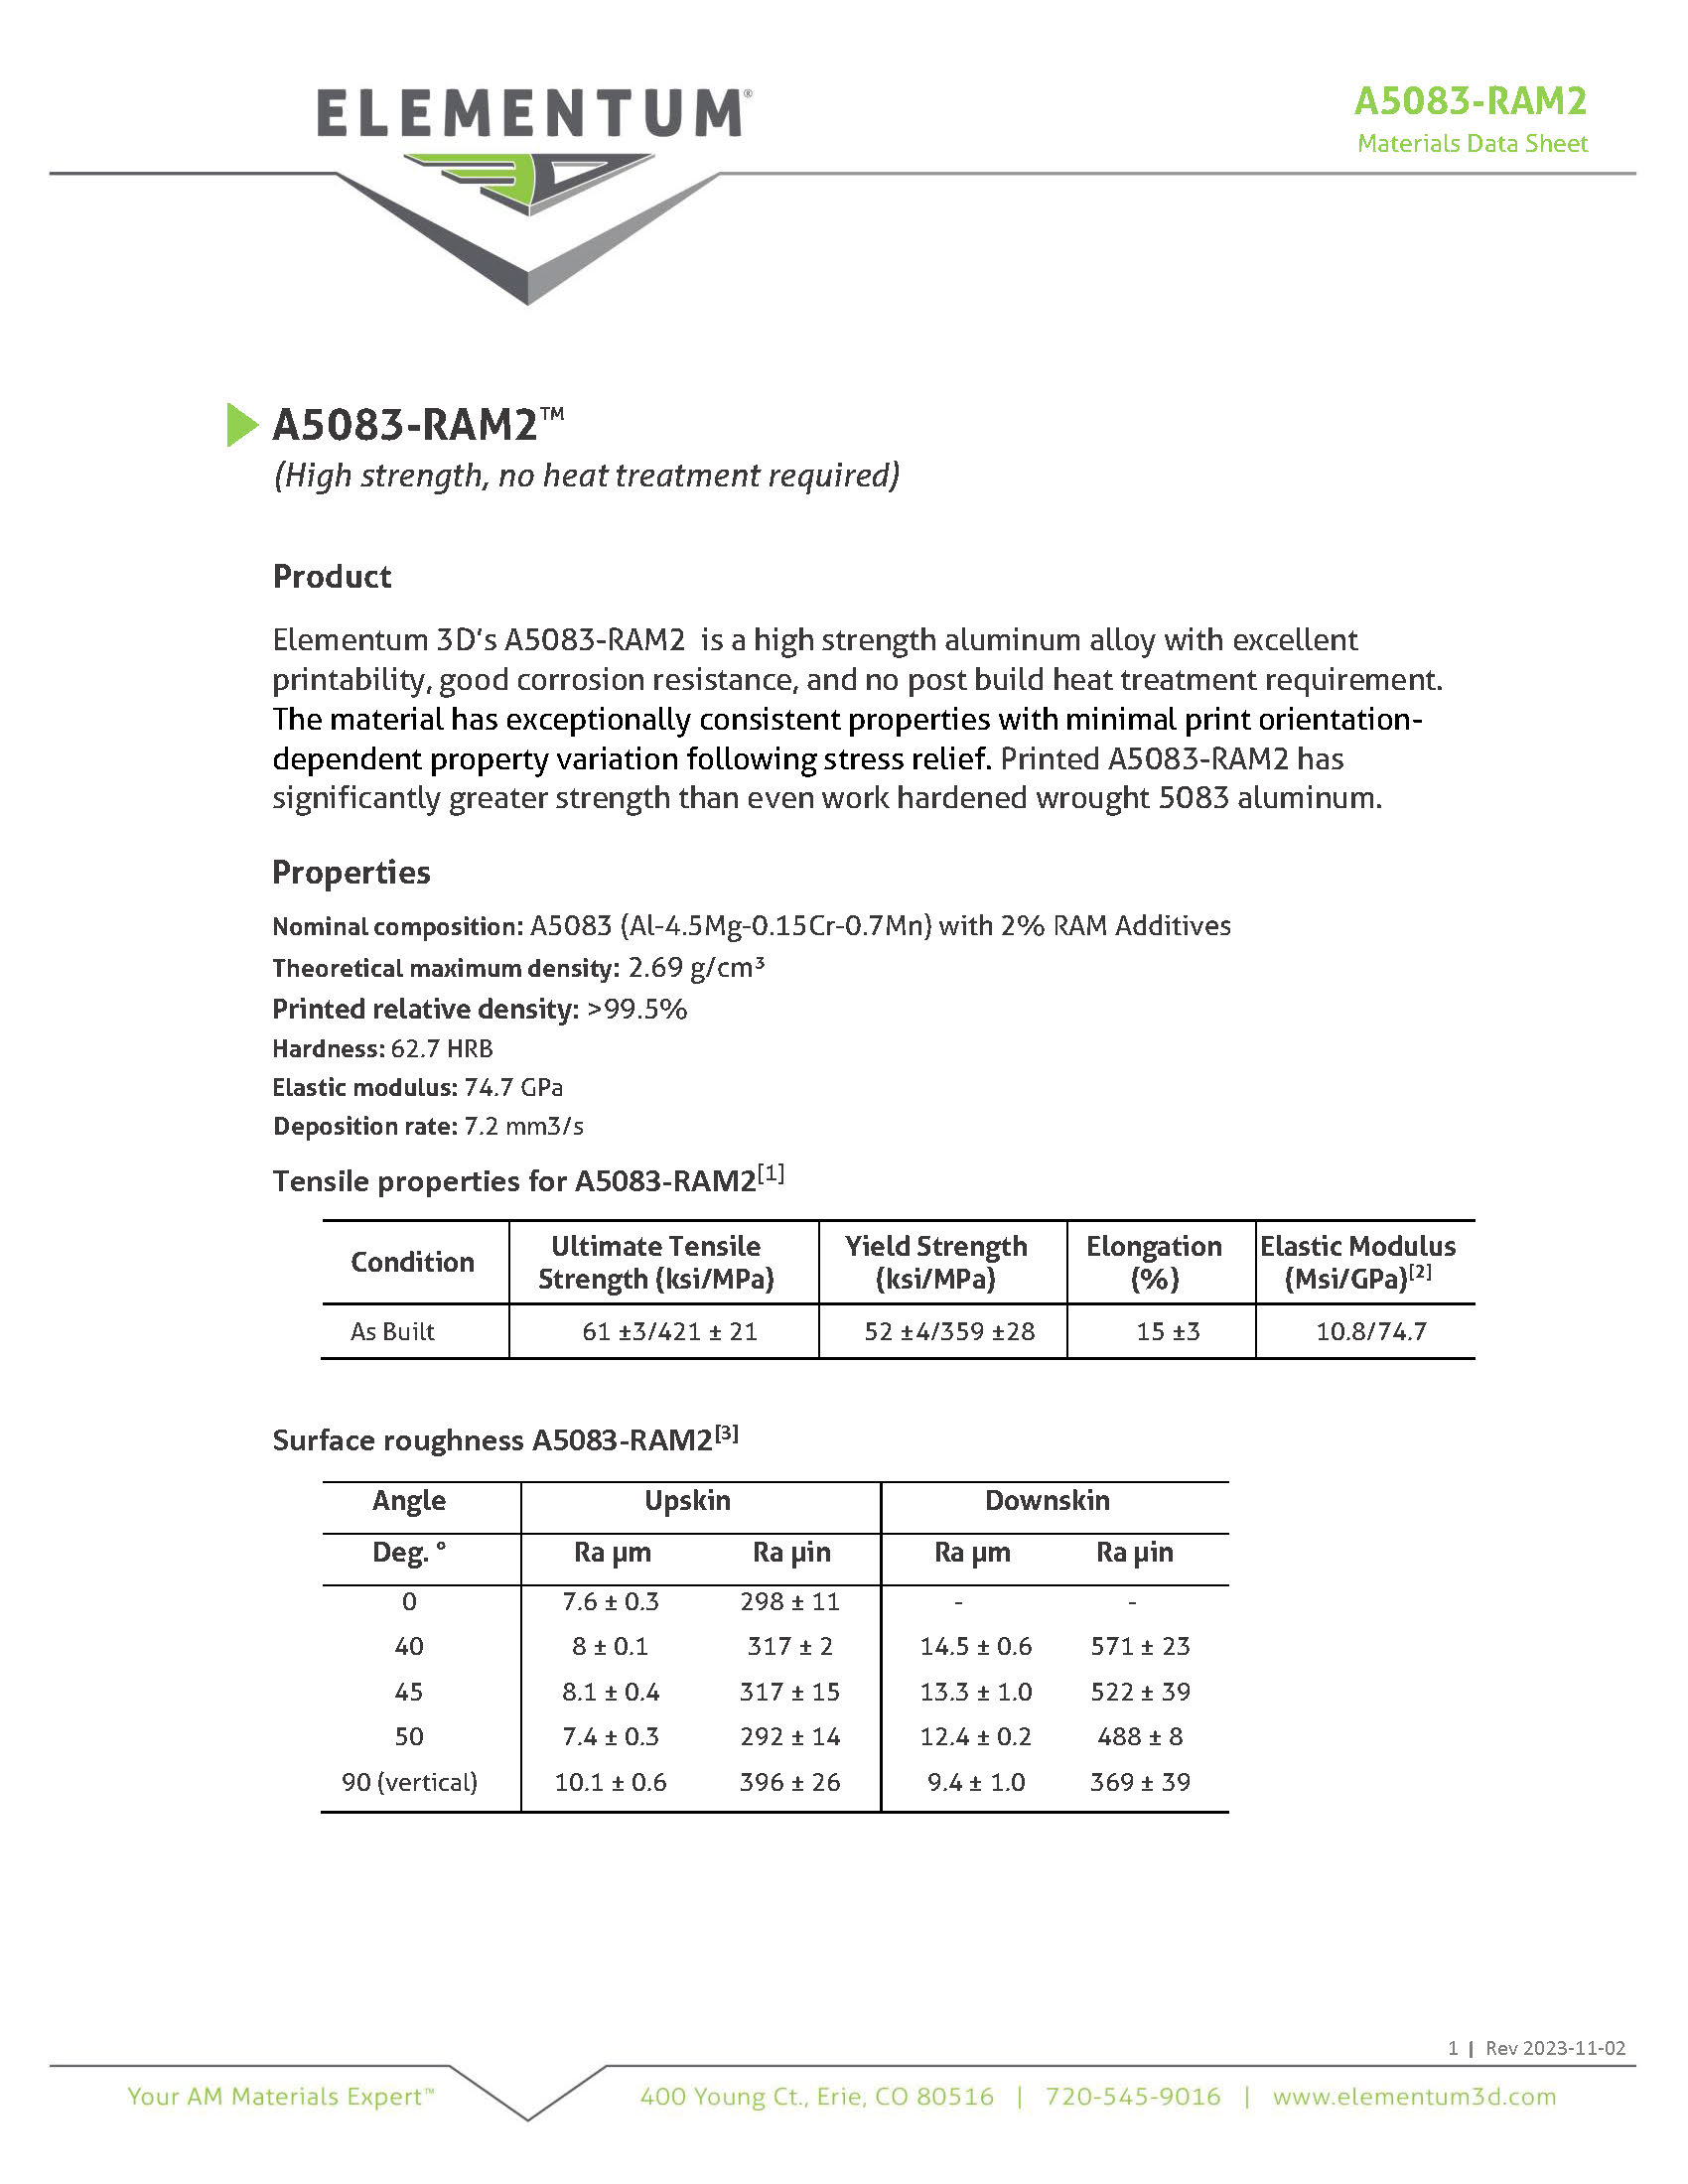 A5083-Ram2 Data Sheet